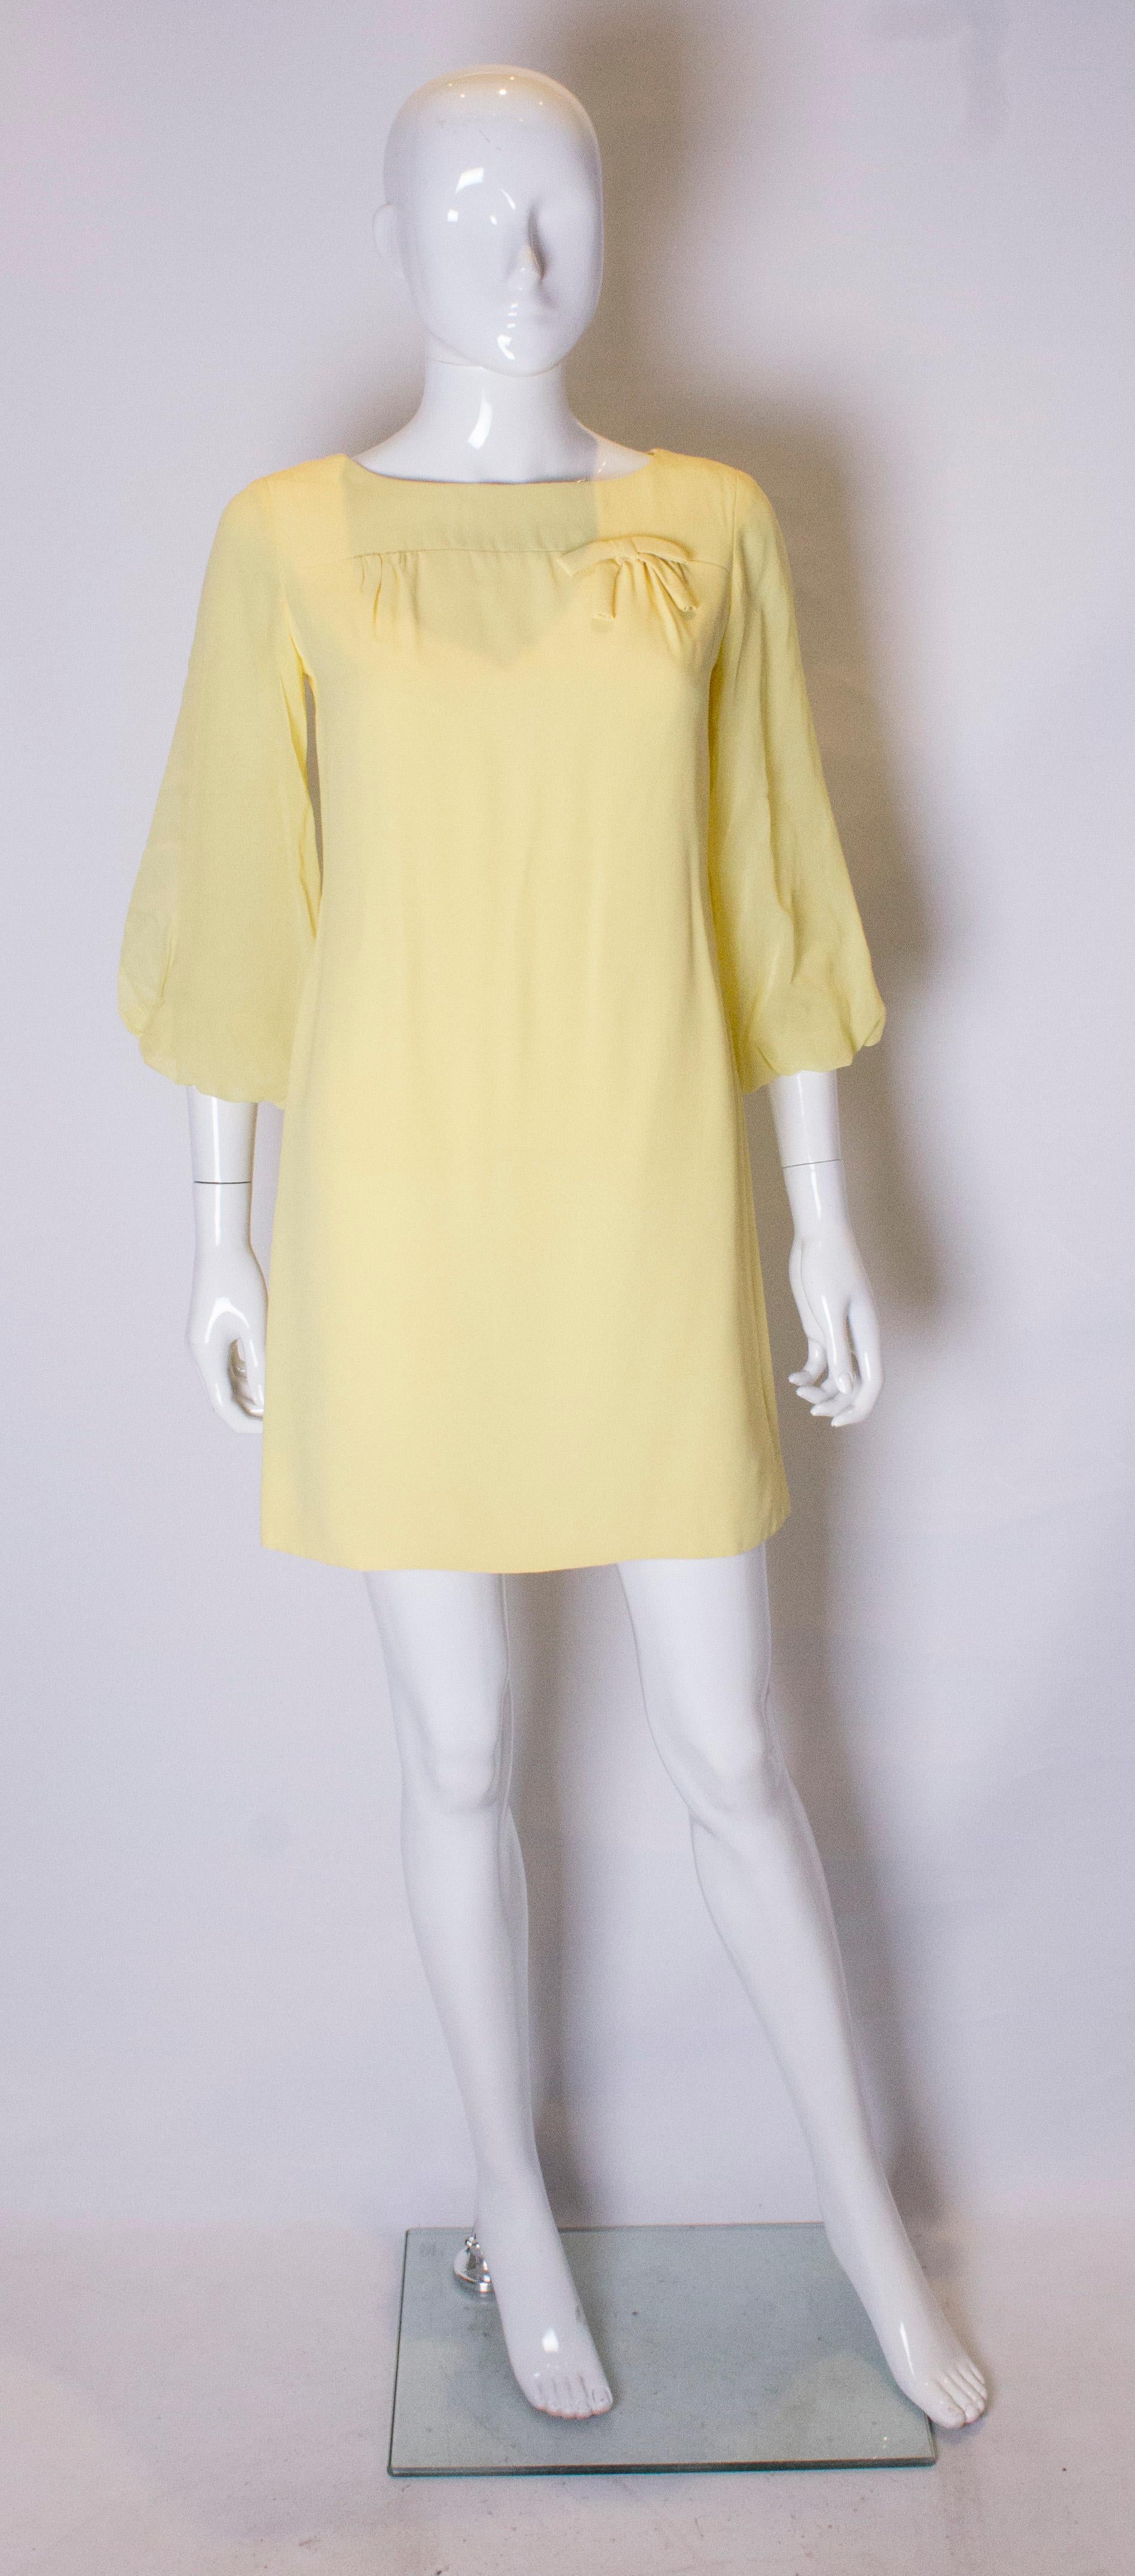  Une jolie mini robe jaune avec de grandes manches. La robe est de forme décontractée, entièrement doublée et dotée d'une fermeture éclair centrale au dos. Elle a une encolure ronde et des manches cloche transparentes qui descendent jusqu'aux coudes.